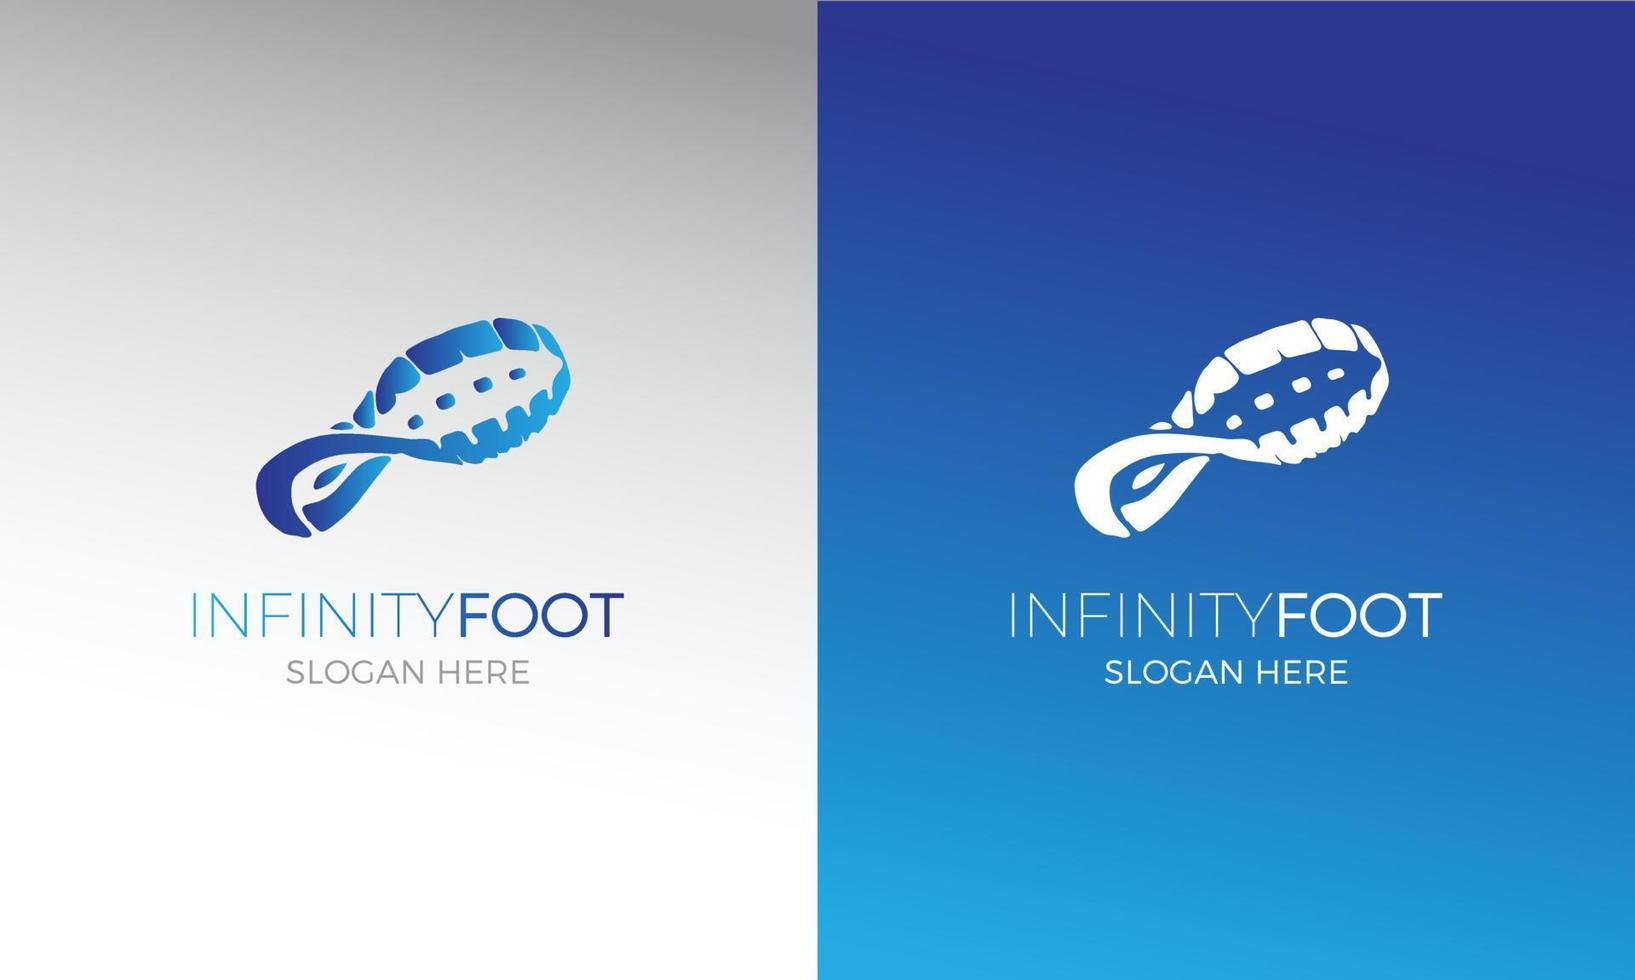 Infinity Foot logo design vector